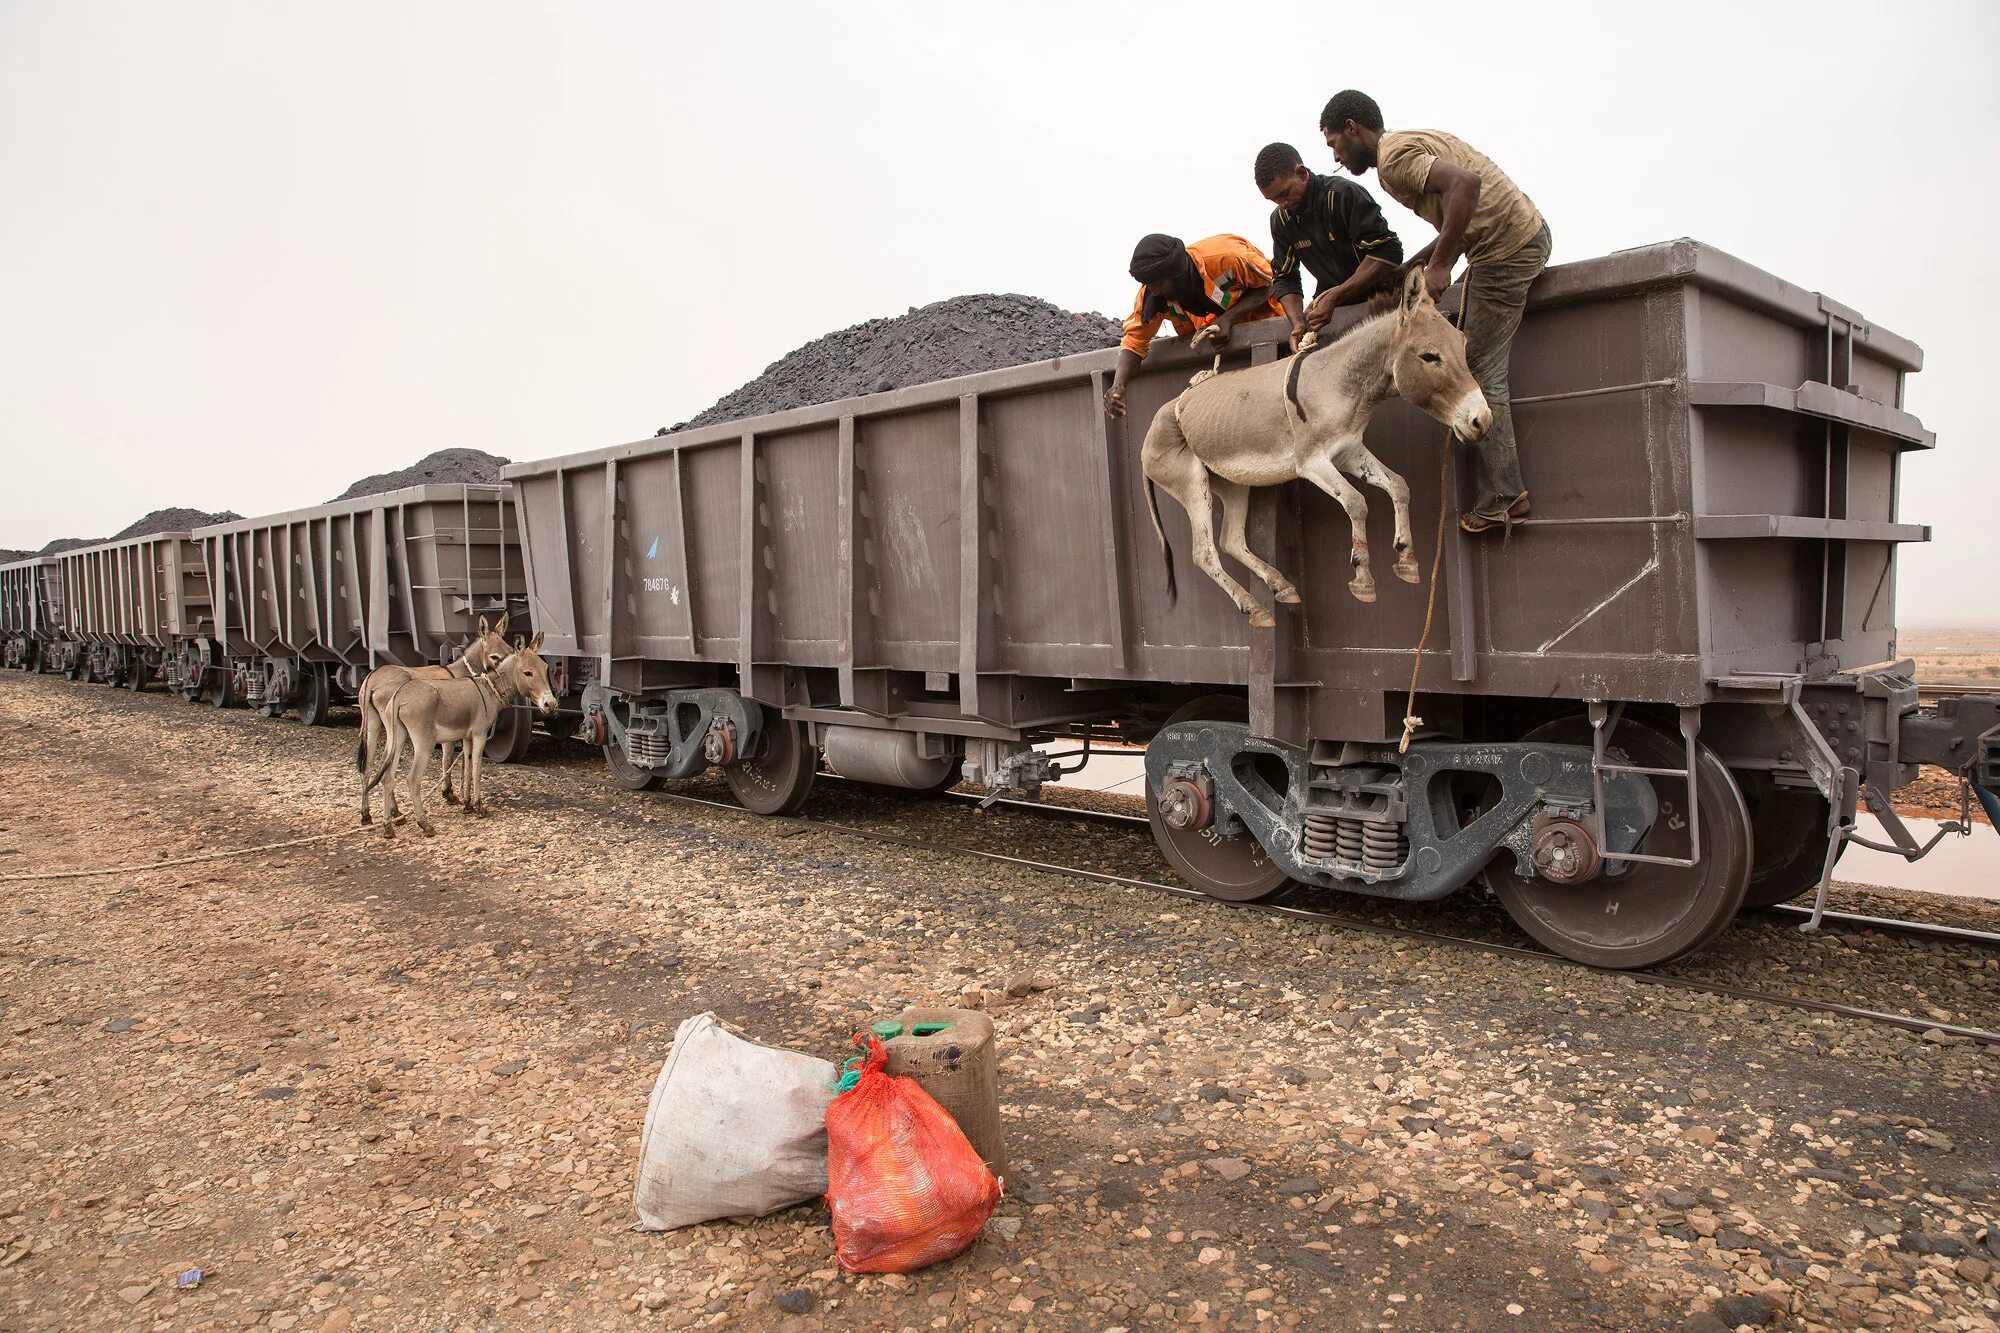 Самый длинный поезд в мире 682 вагона. Вагон для перевозки животных. Перевозка живности в вагонах. Животный ж д